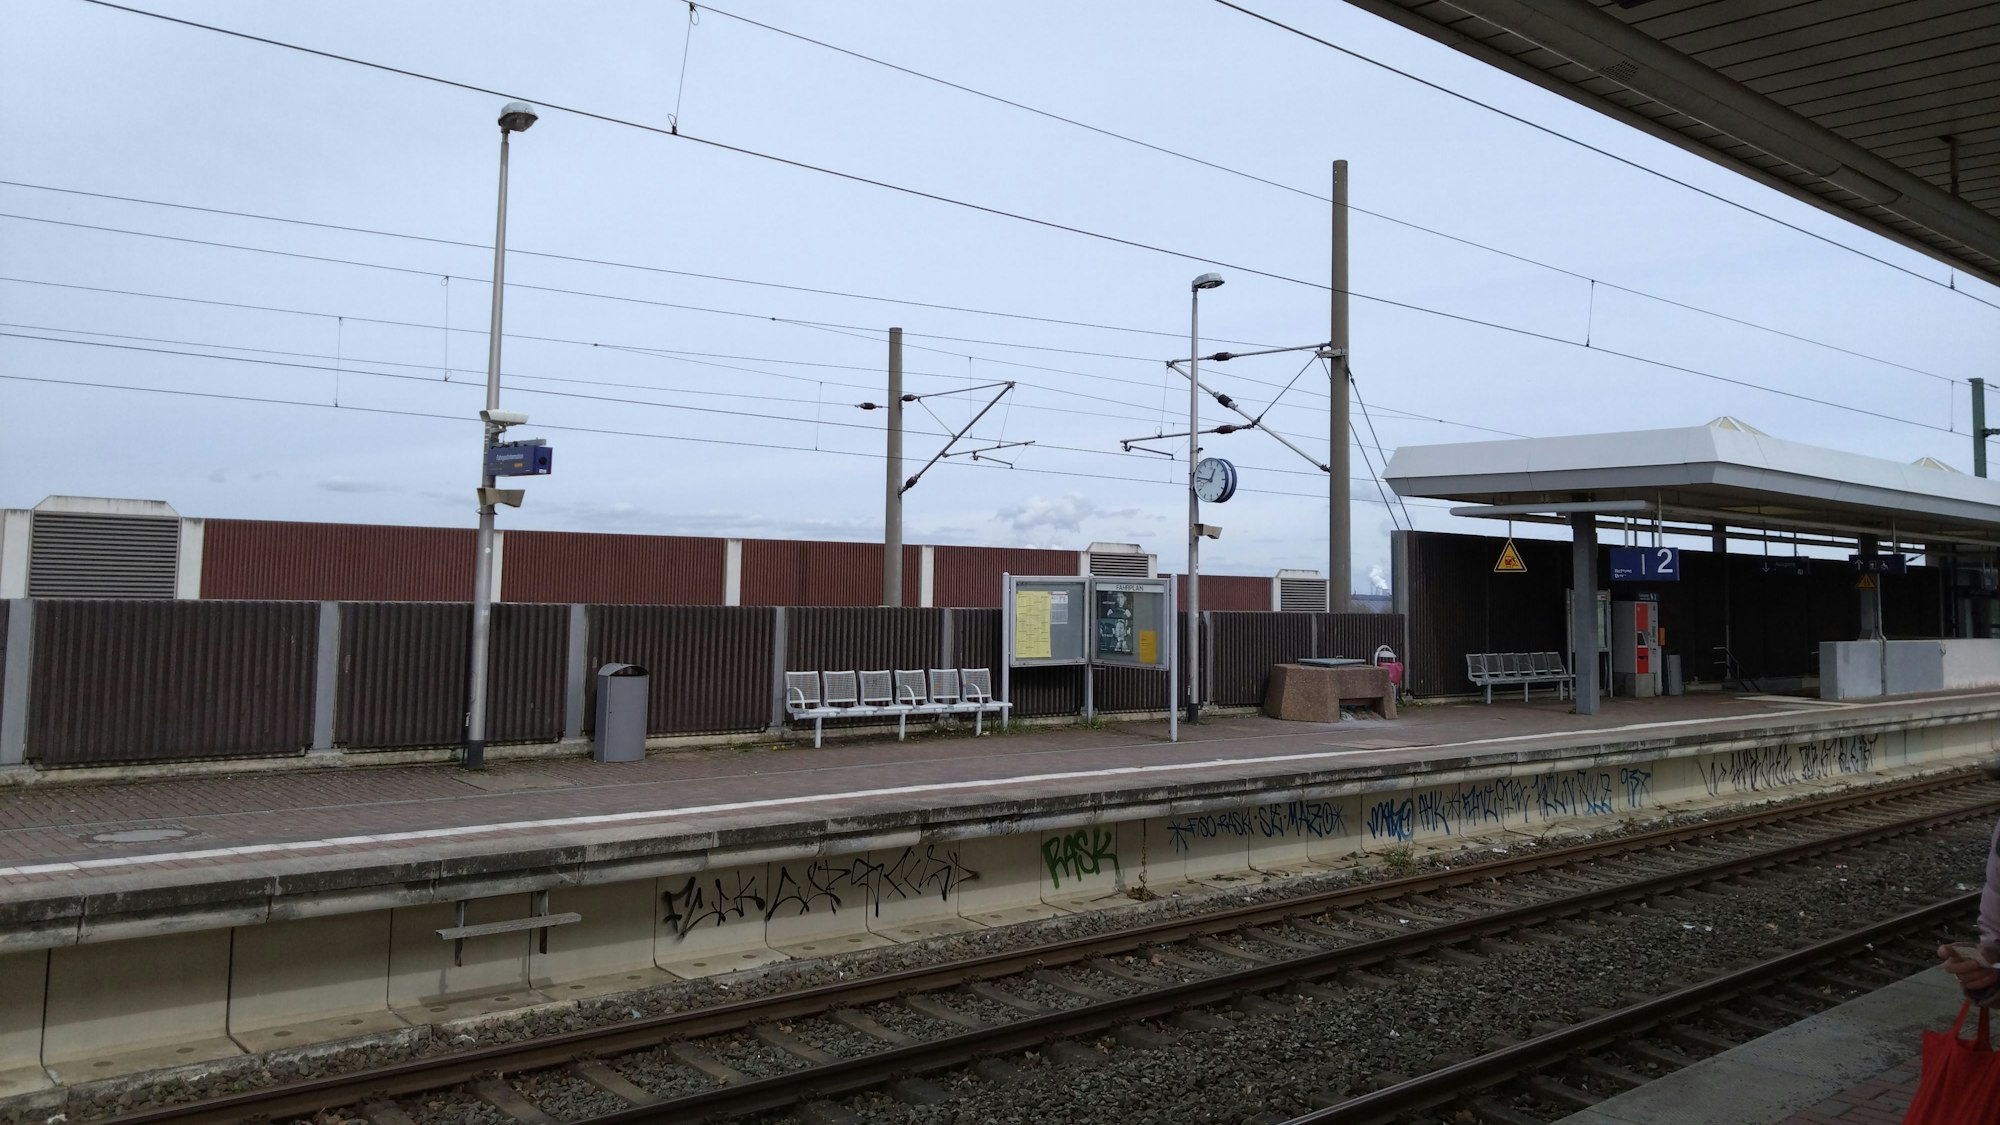 Der Bahnhof Buir in Kerpen mitsamt Gleisen und Oberleitung ist zu sehen.